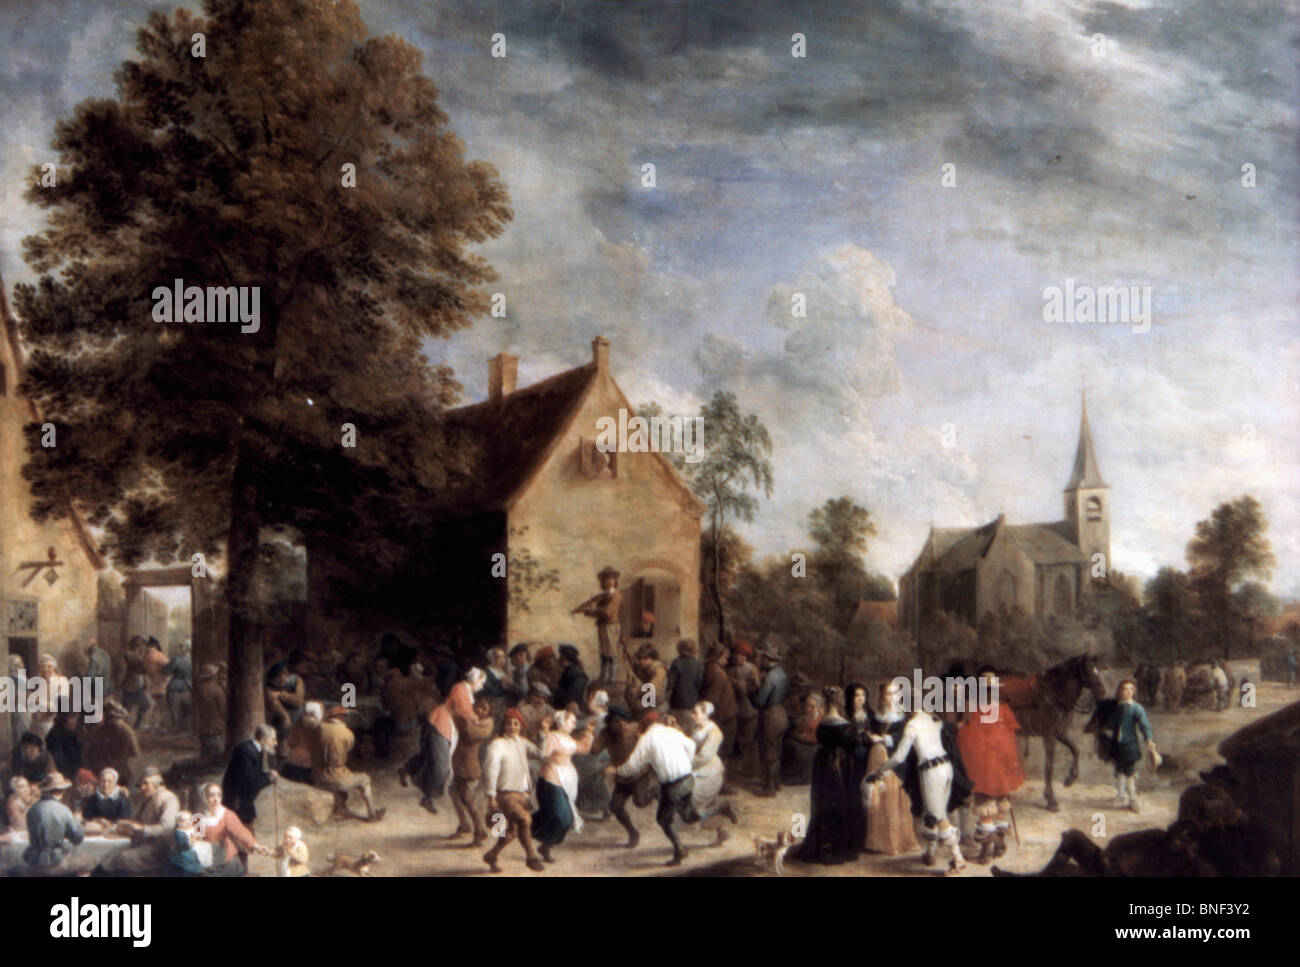 Dorf ein fest von David Teniers der jüngere, Öl auf Leinwand, 1646, 1610-1690, Russland, St. Petersburg, Eremitage Stockfoto